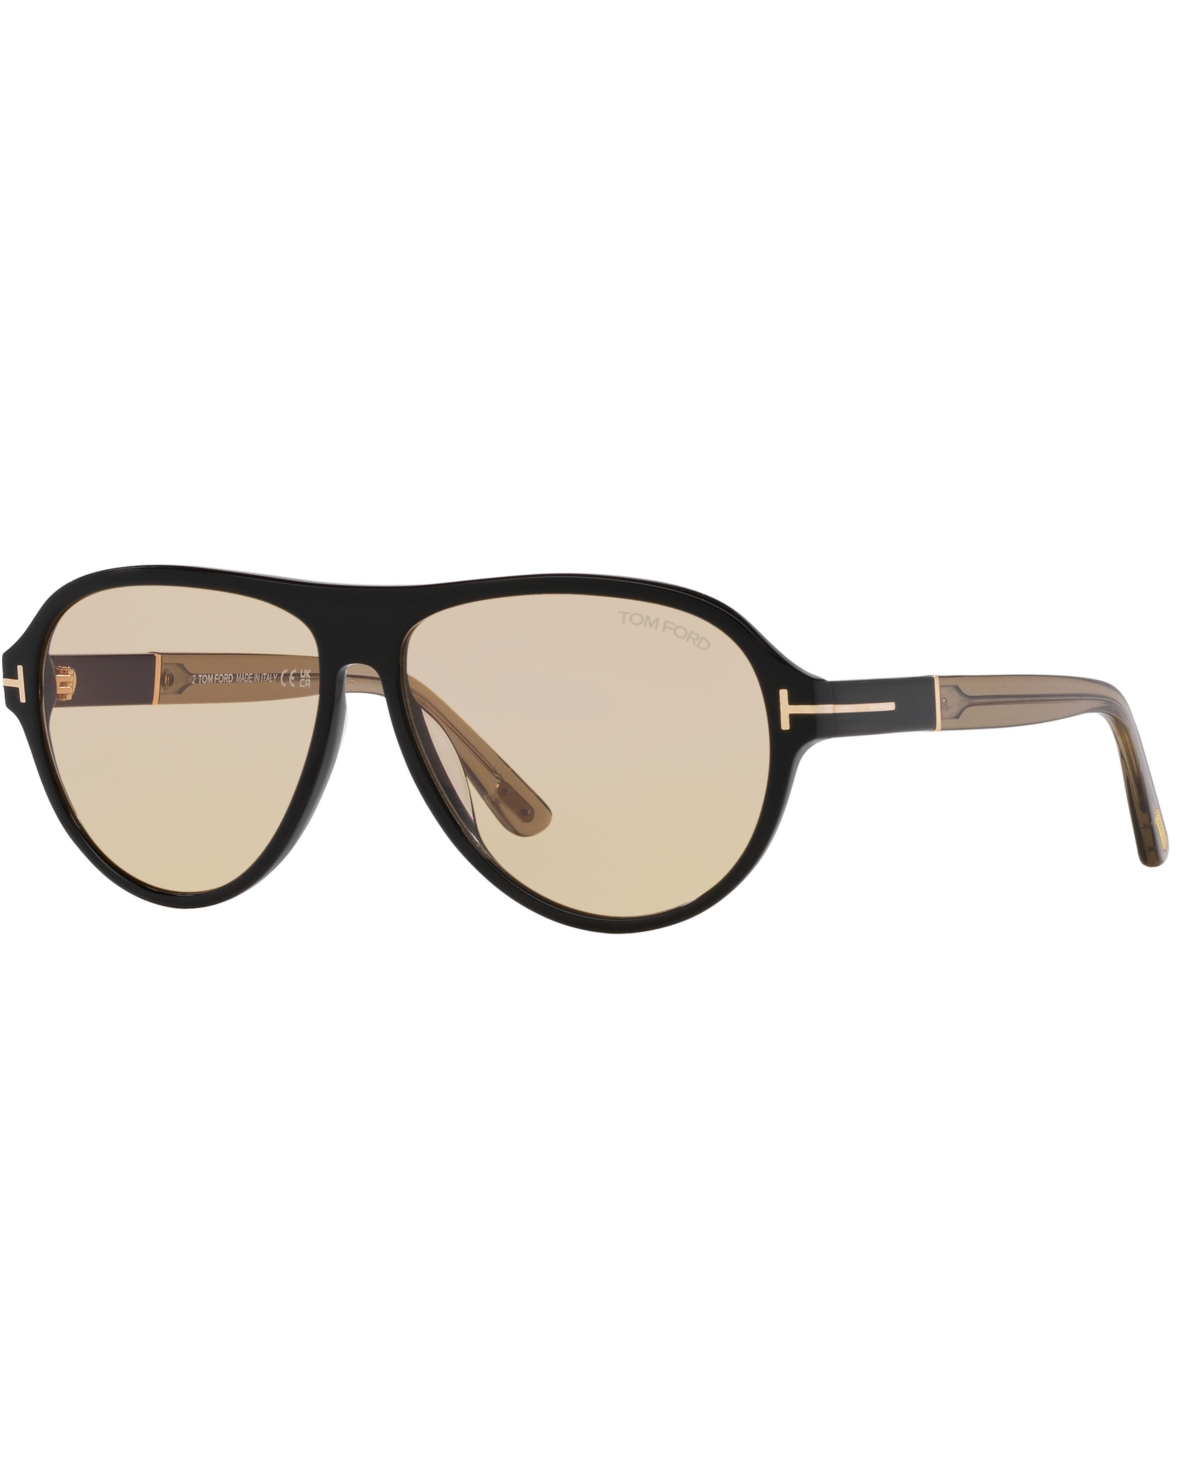 Men's Sunglasses, FT1080 Photochromic - Black Shiny